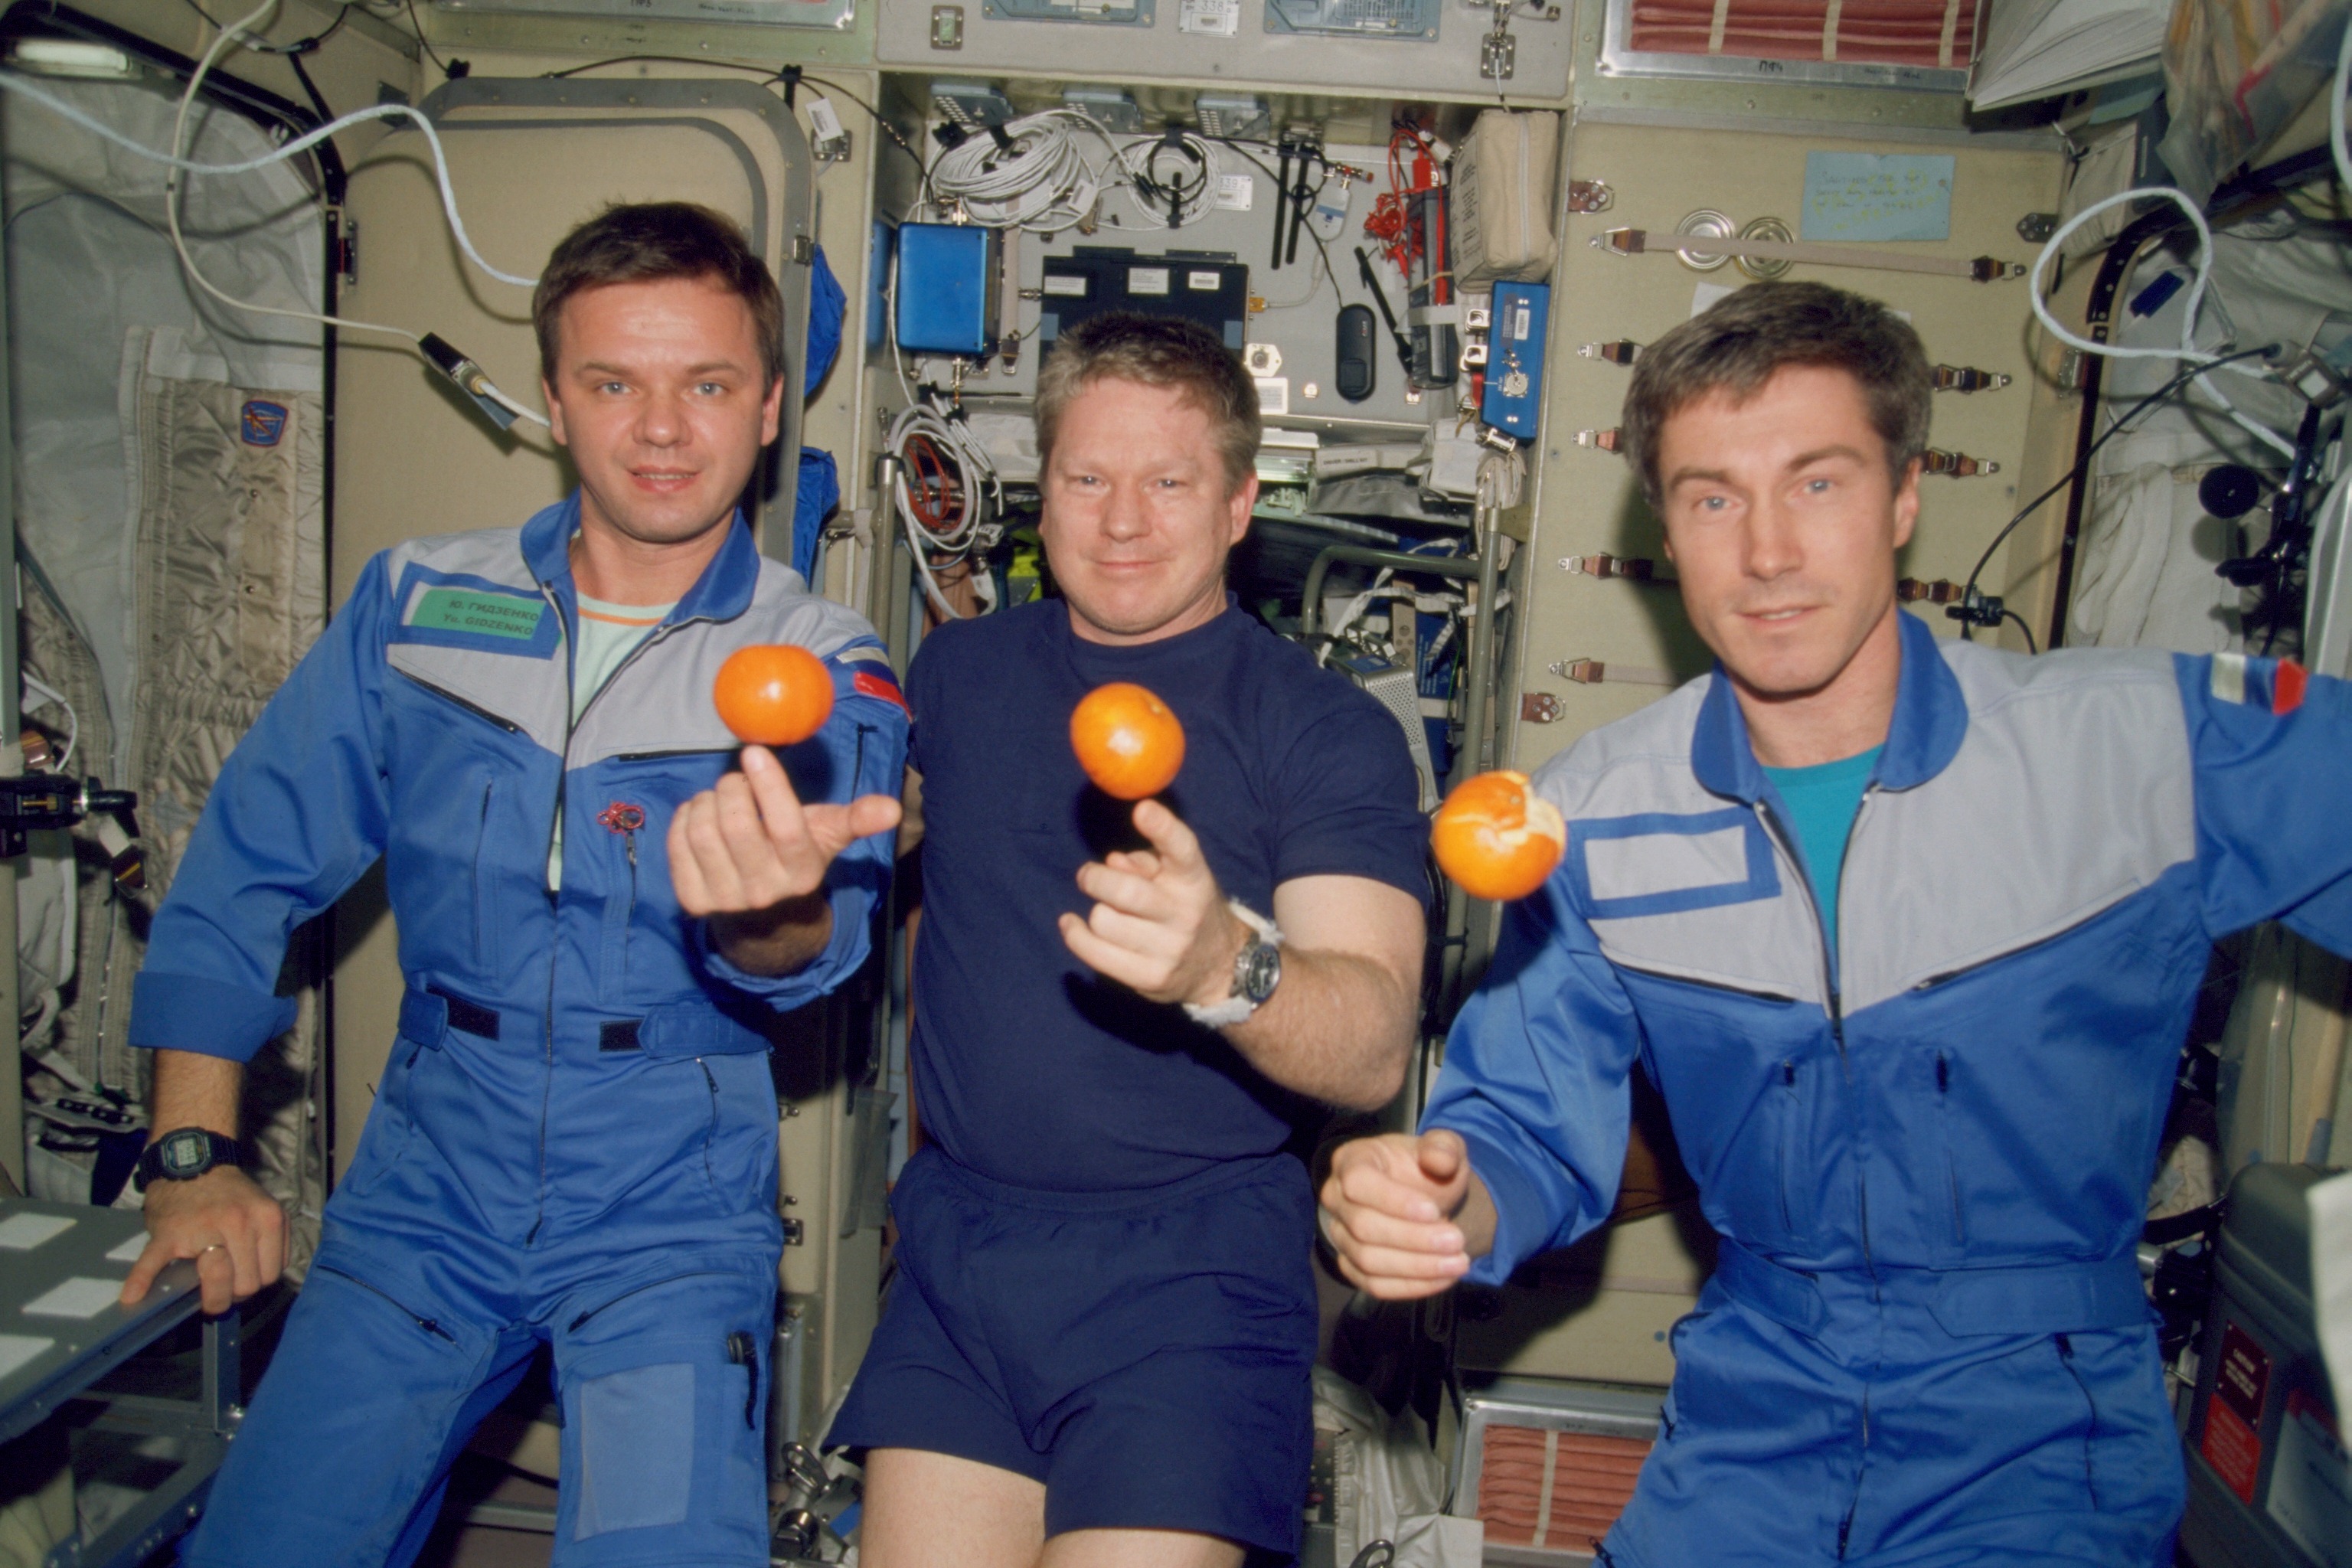 The Expedition 1 crew from the left, cosmonaut Yuri Gidzenko, Nasa astronaut William Shepherd, and cosmonaut Sergei Krikalev